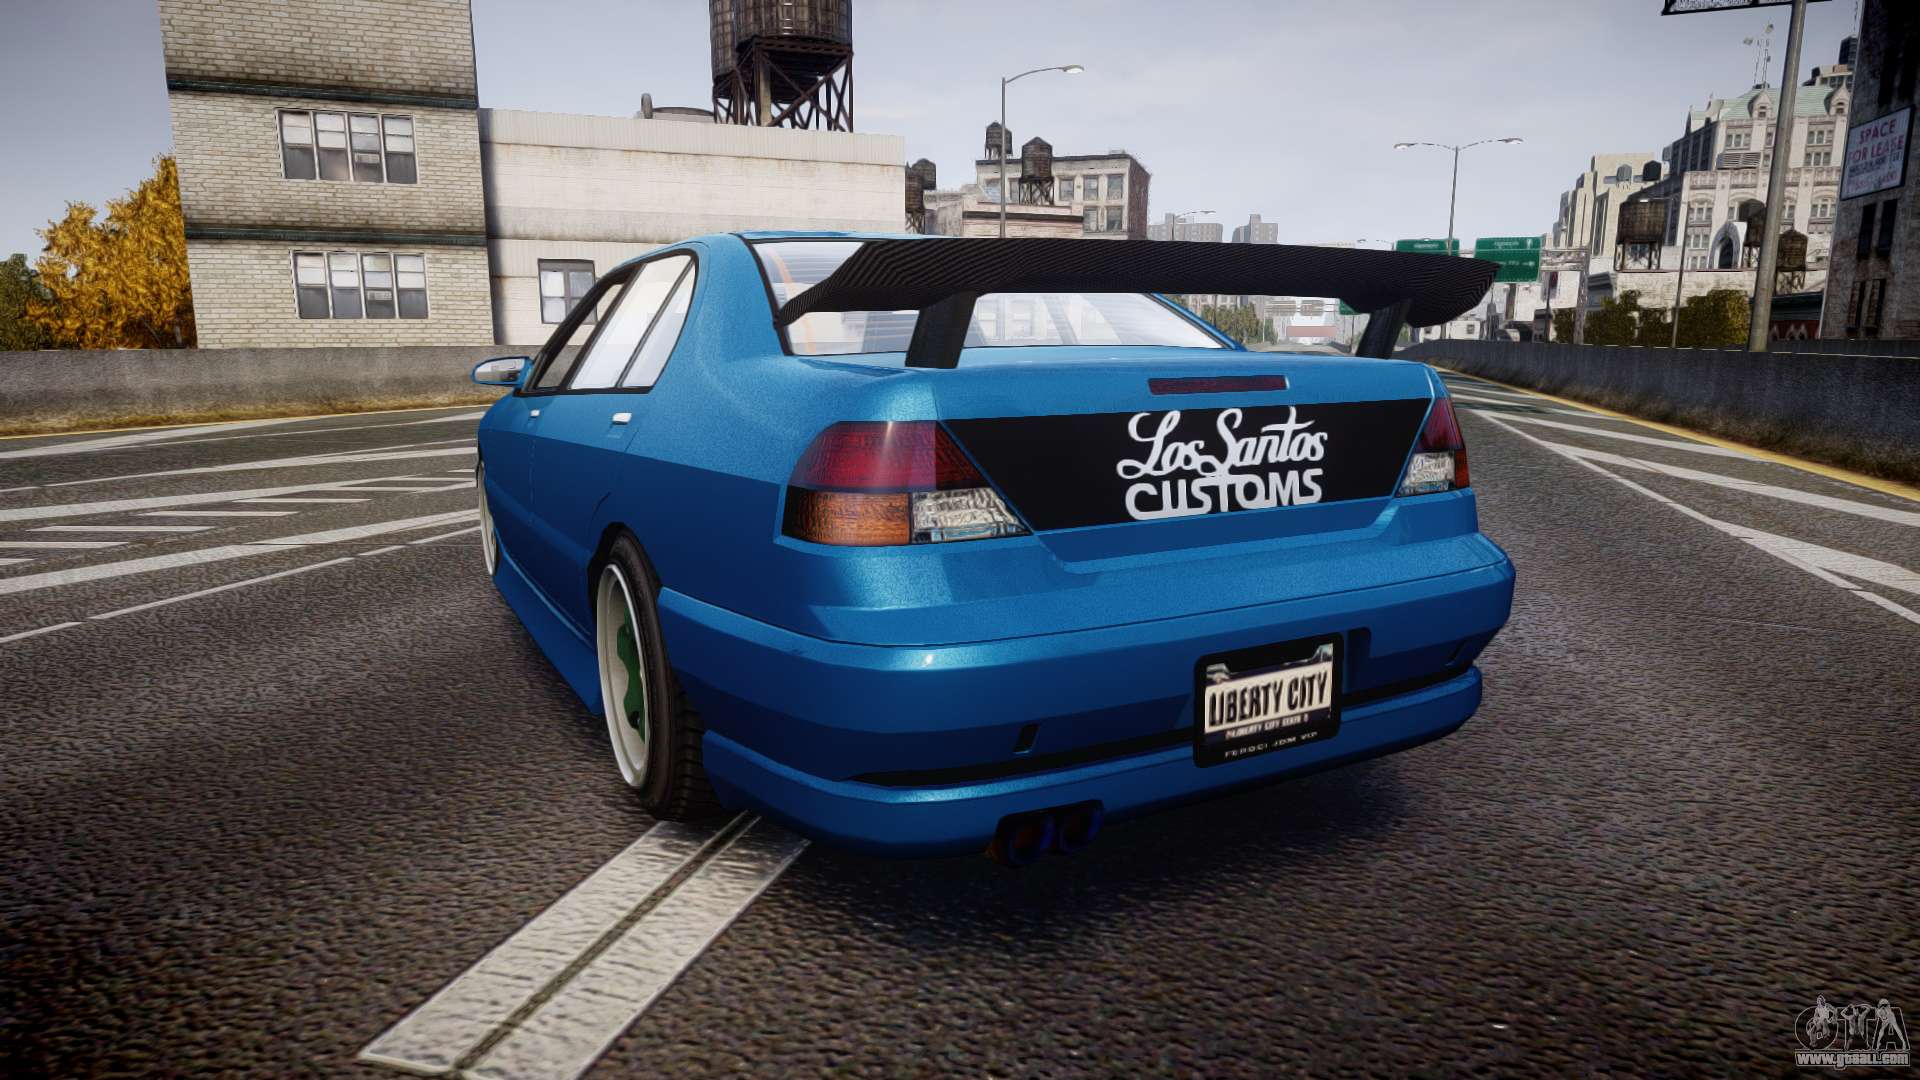 GTA V - Los Santos Customs by ddjunior on DeviantArt